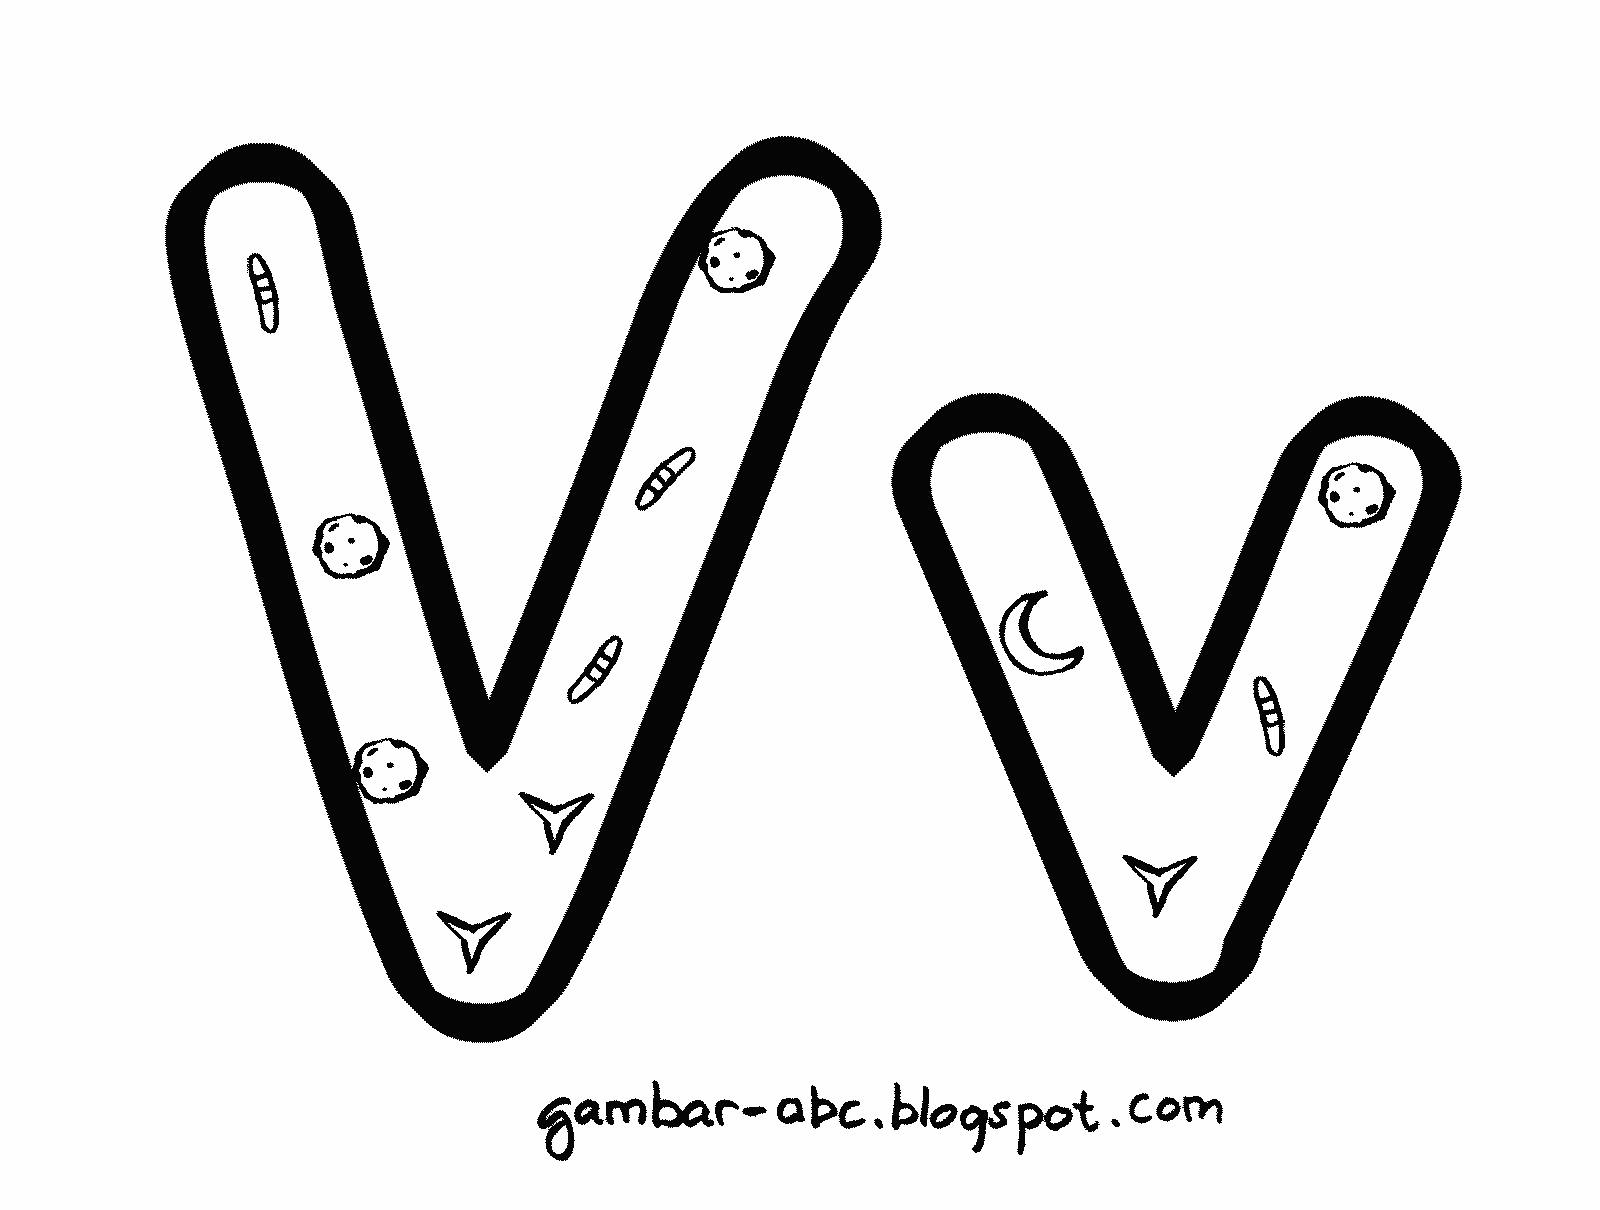 Mengenal dan Mewarnai Huruf "V" - Contoh Gambar Mewarnai